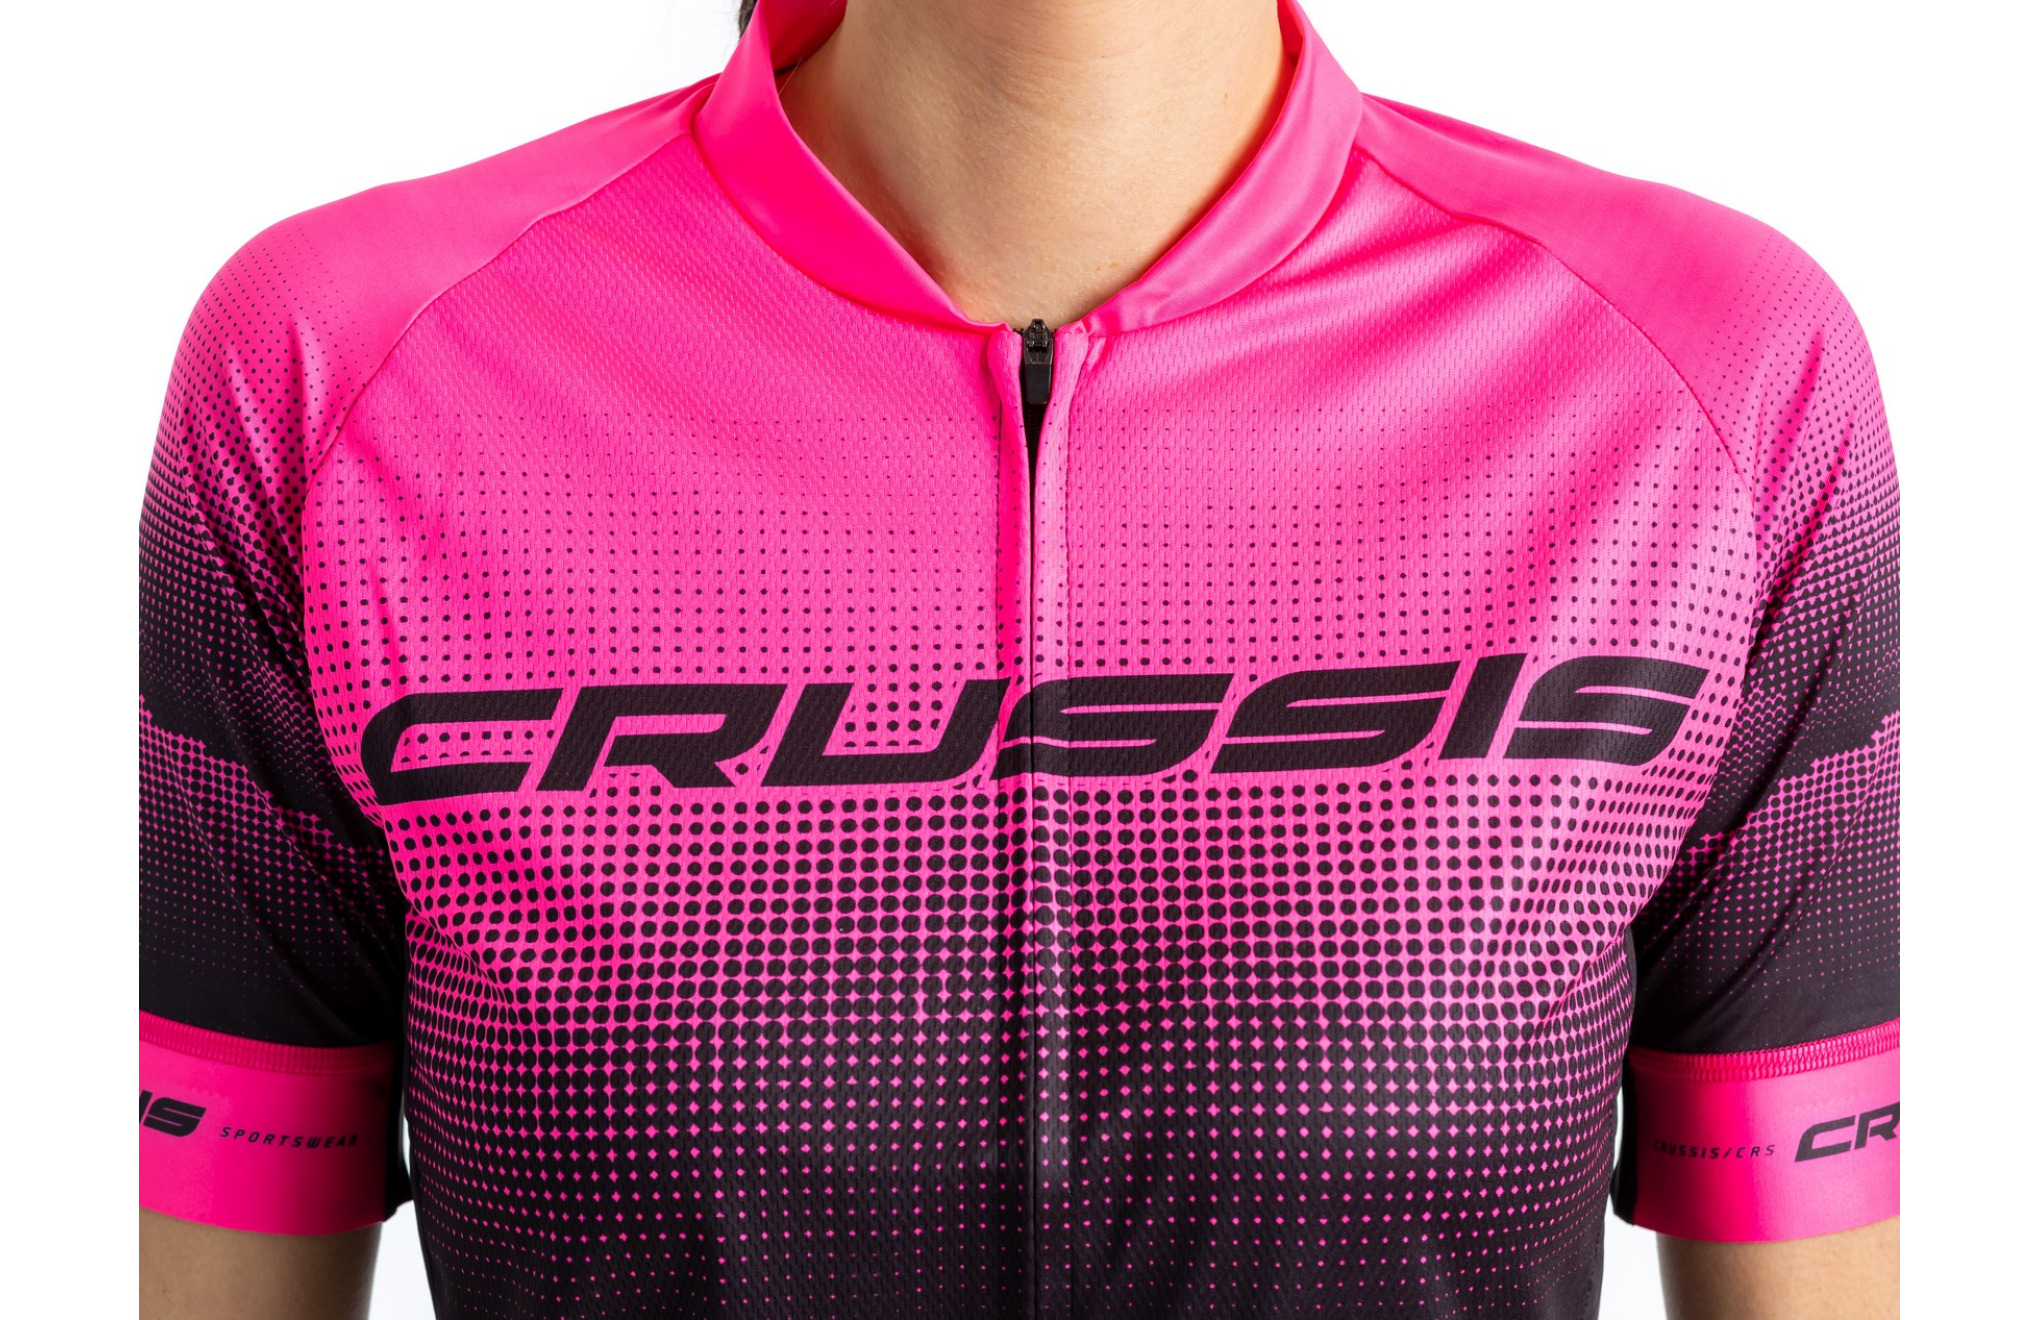 Dámský cyklistický dres CRUSSIS, krátký rukáv, černá/růžová